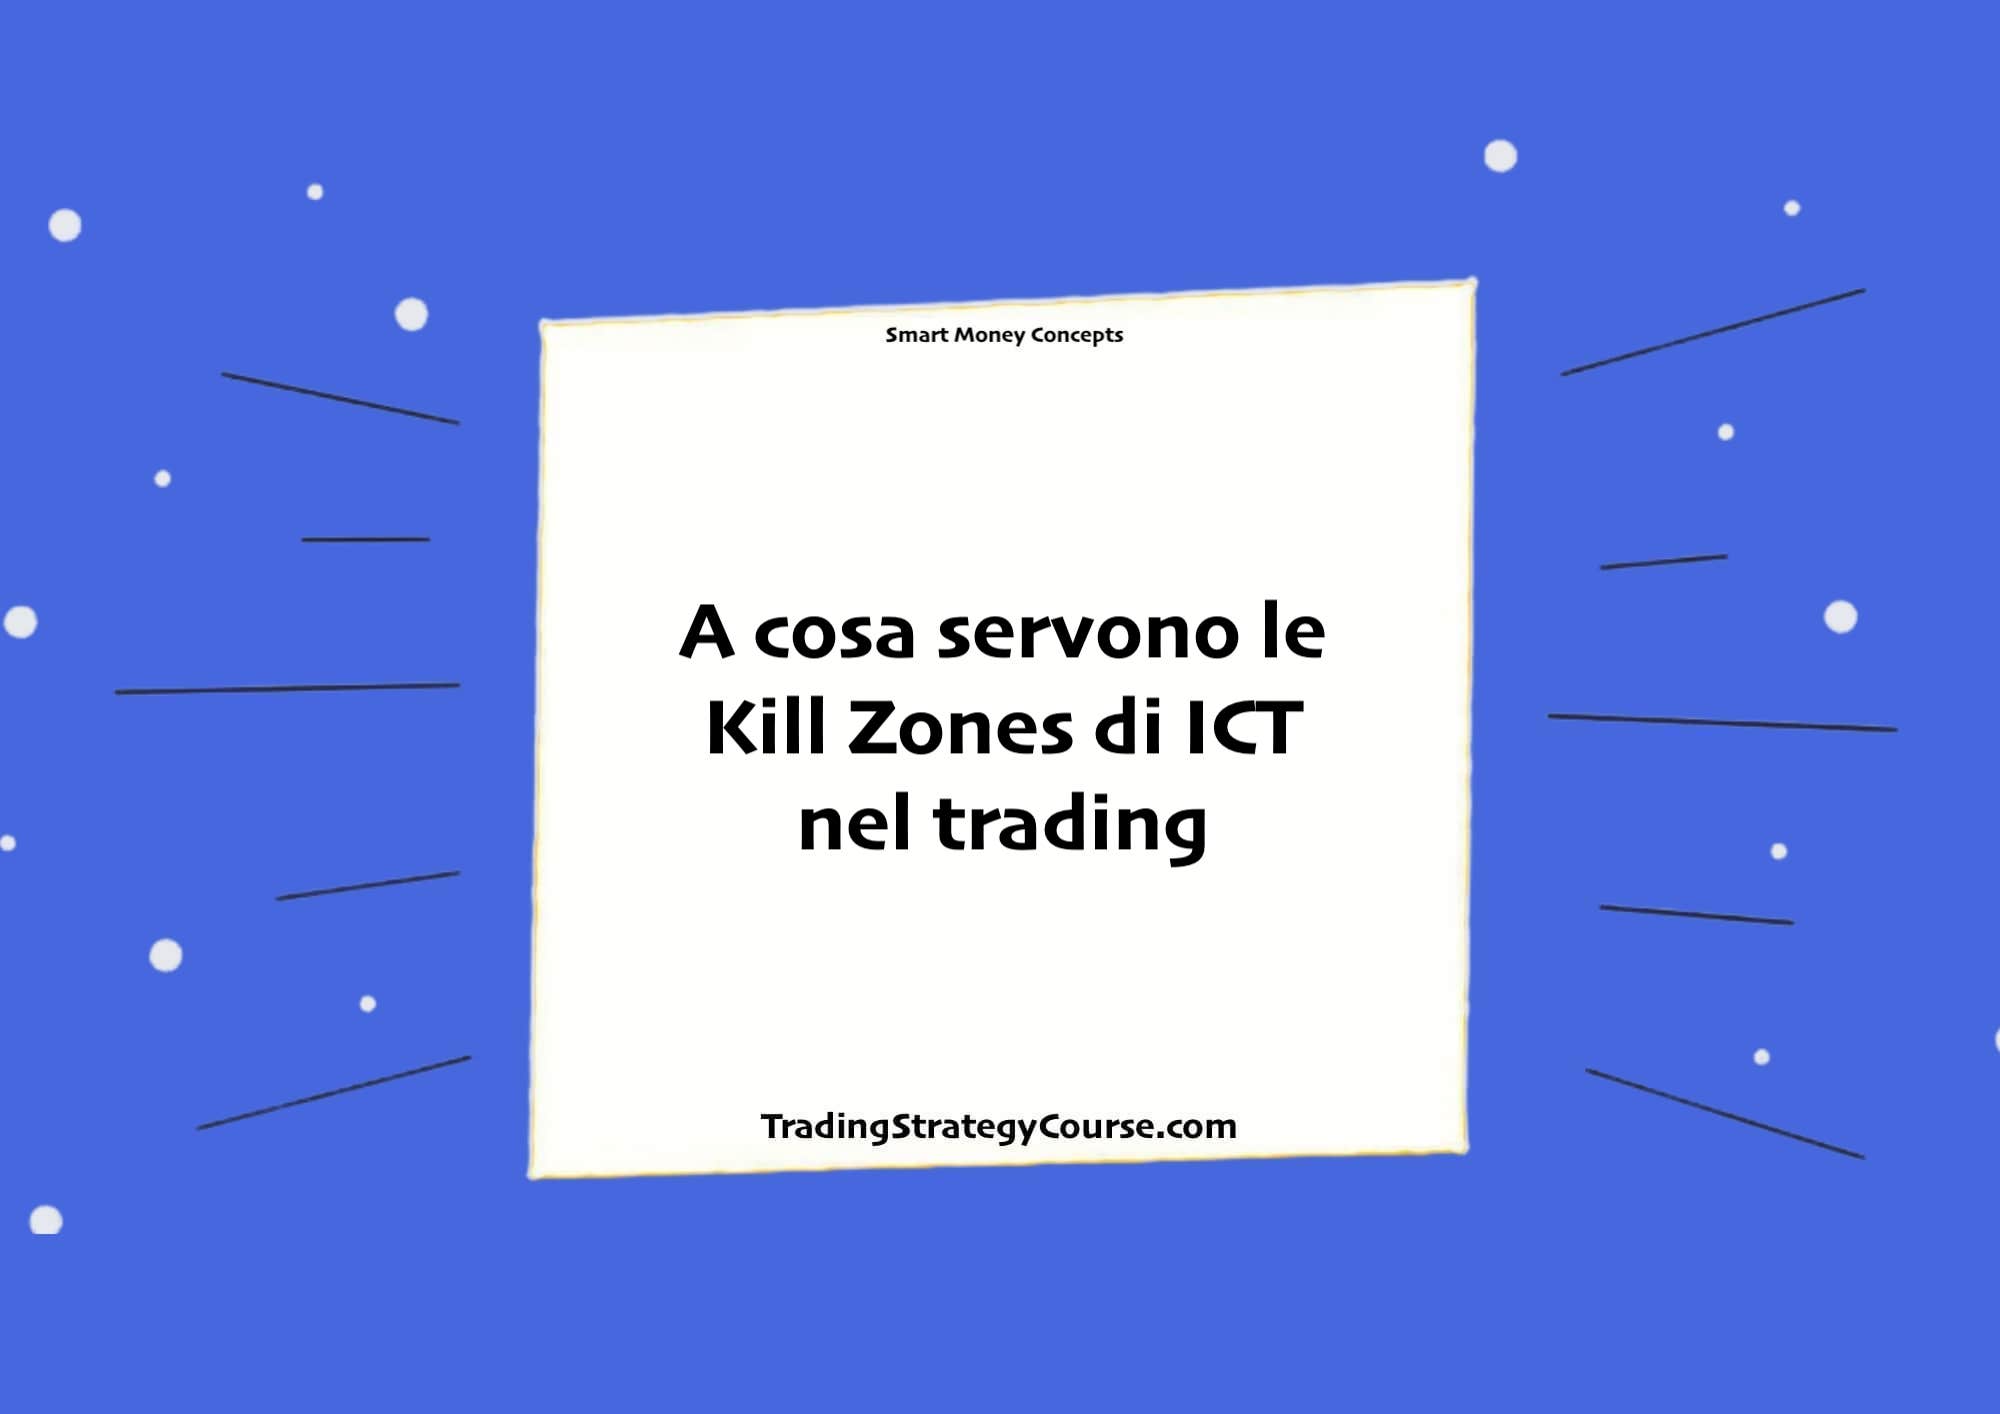 A cosa servono le Kill Zones di ICT nel trading forex